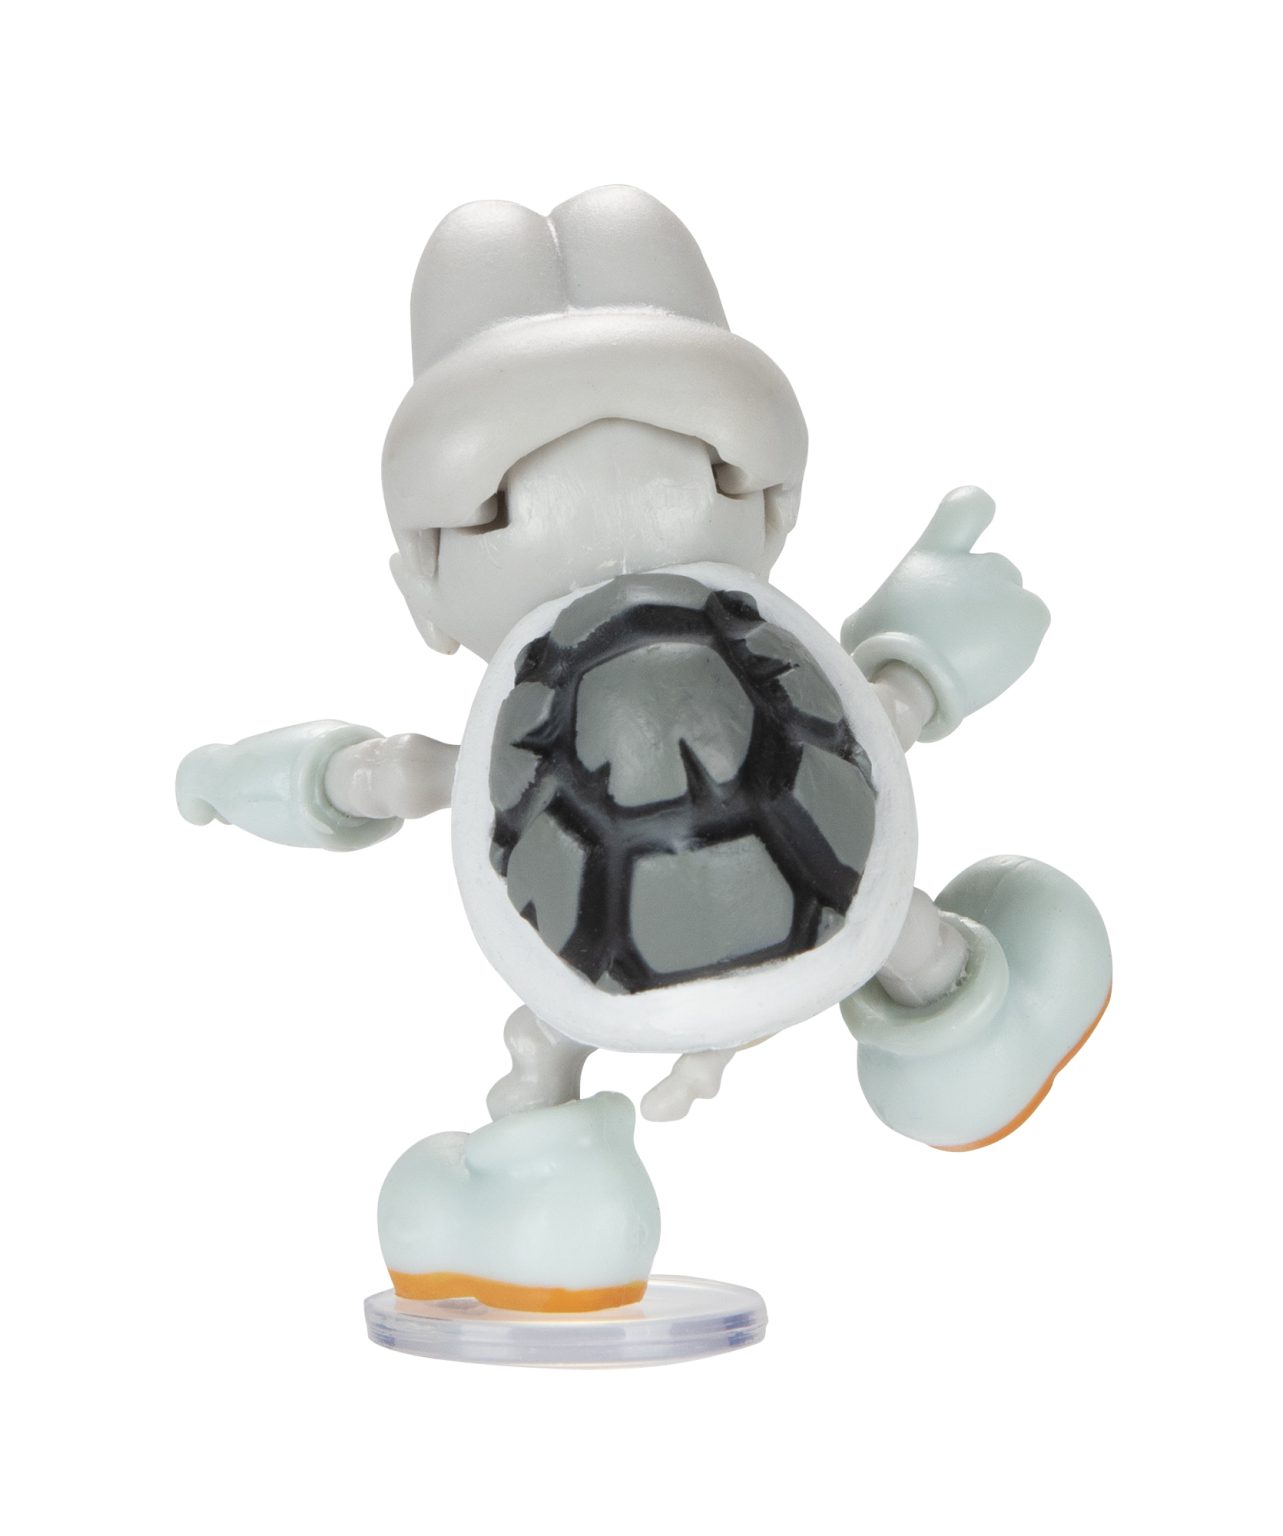 Super Mario Articulated Action Figure 2.5″ Dry Bones